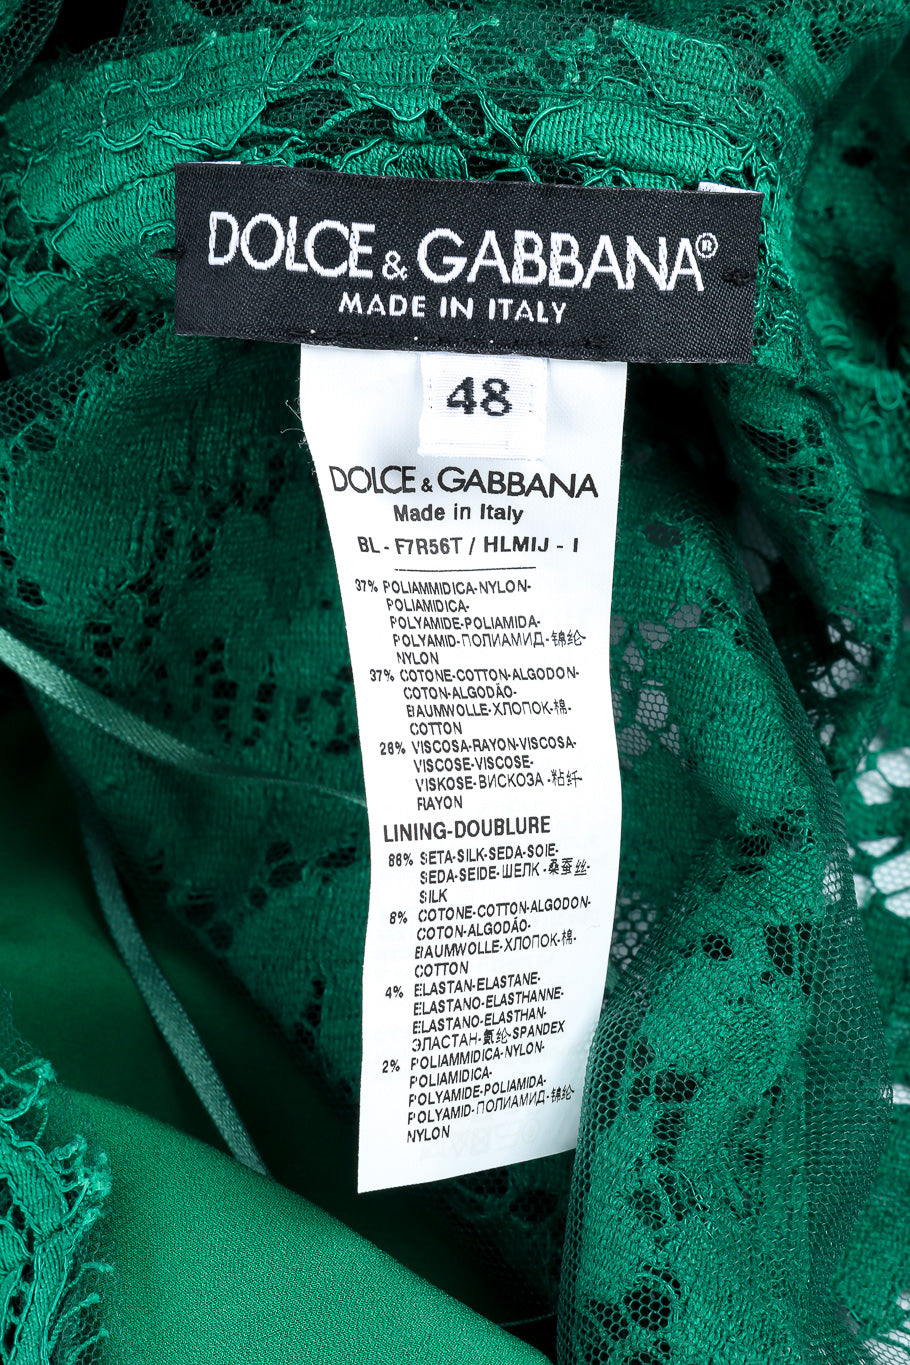 Dolce & Gabbana soutache lace top designer label, size and fabric content @recessla